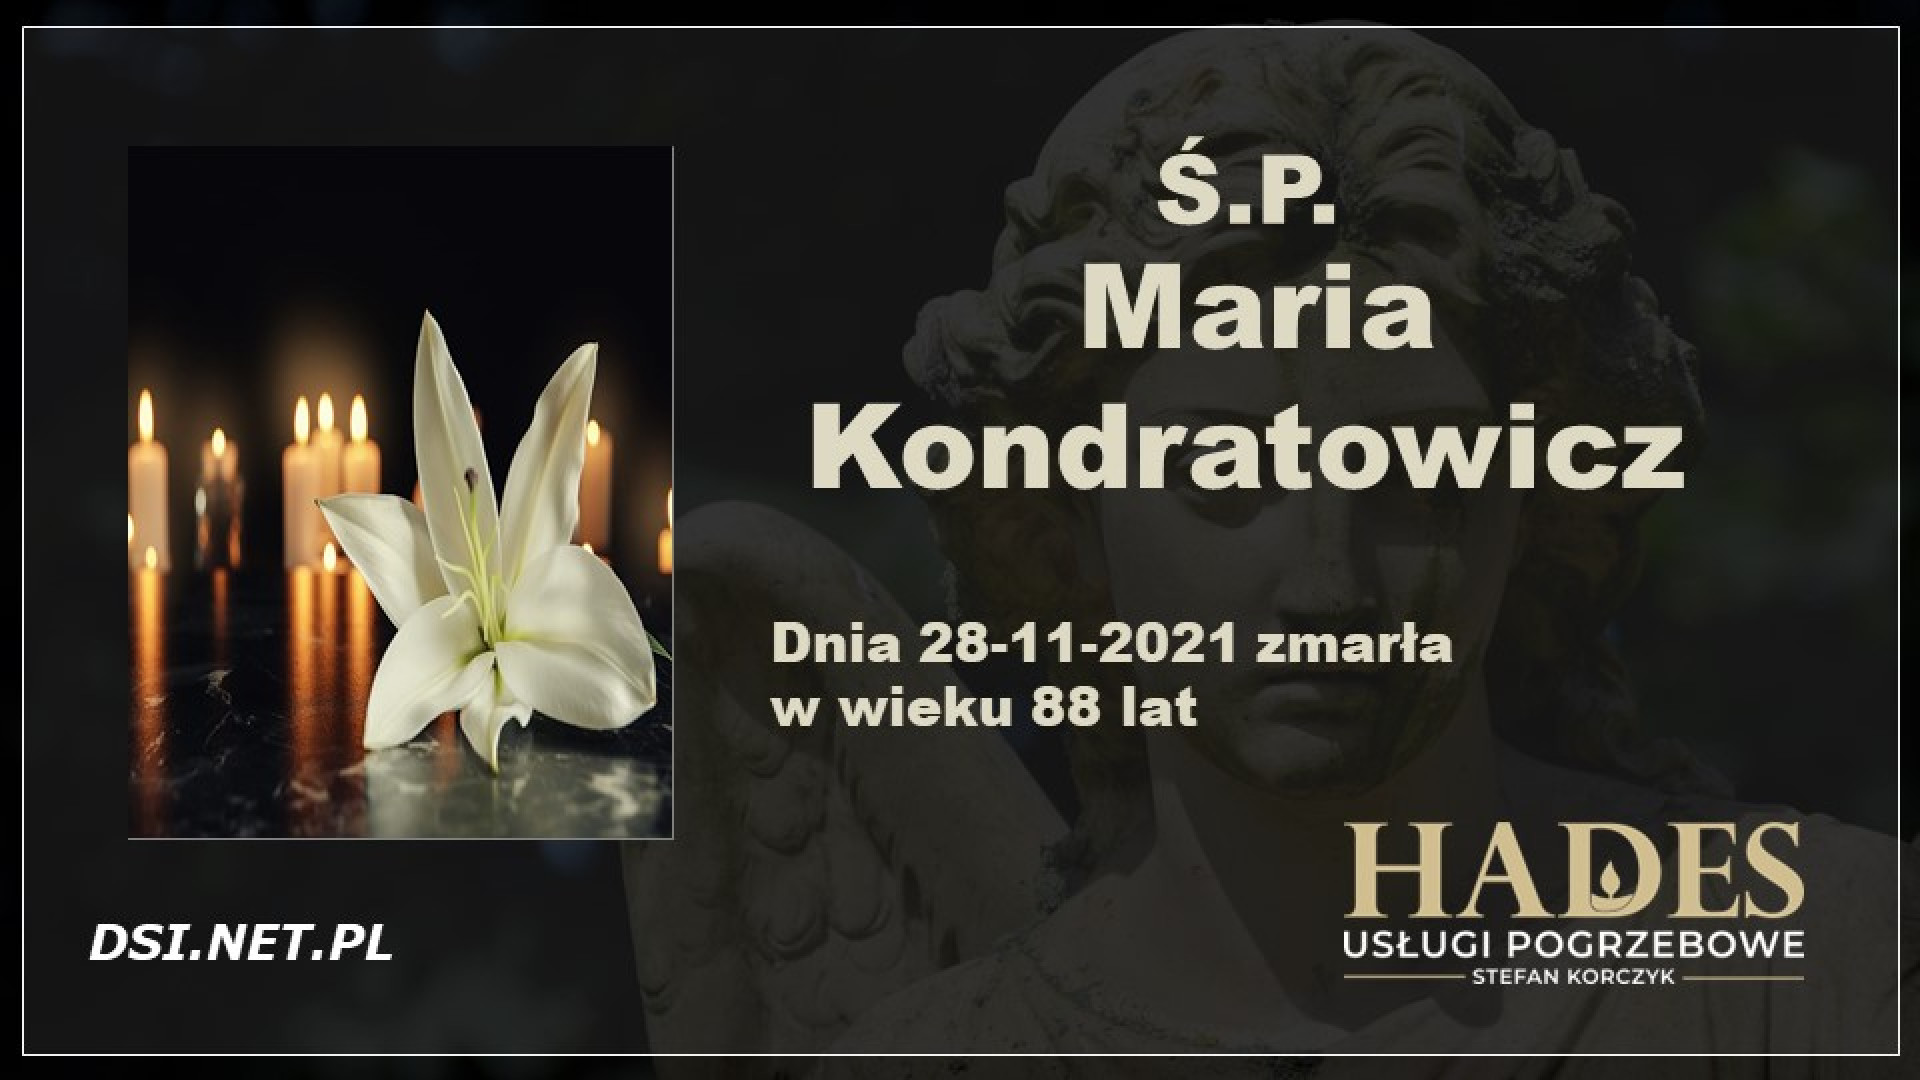 Ś.P. Maria Kondratowicz